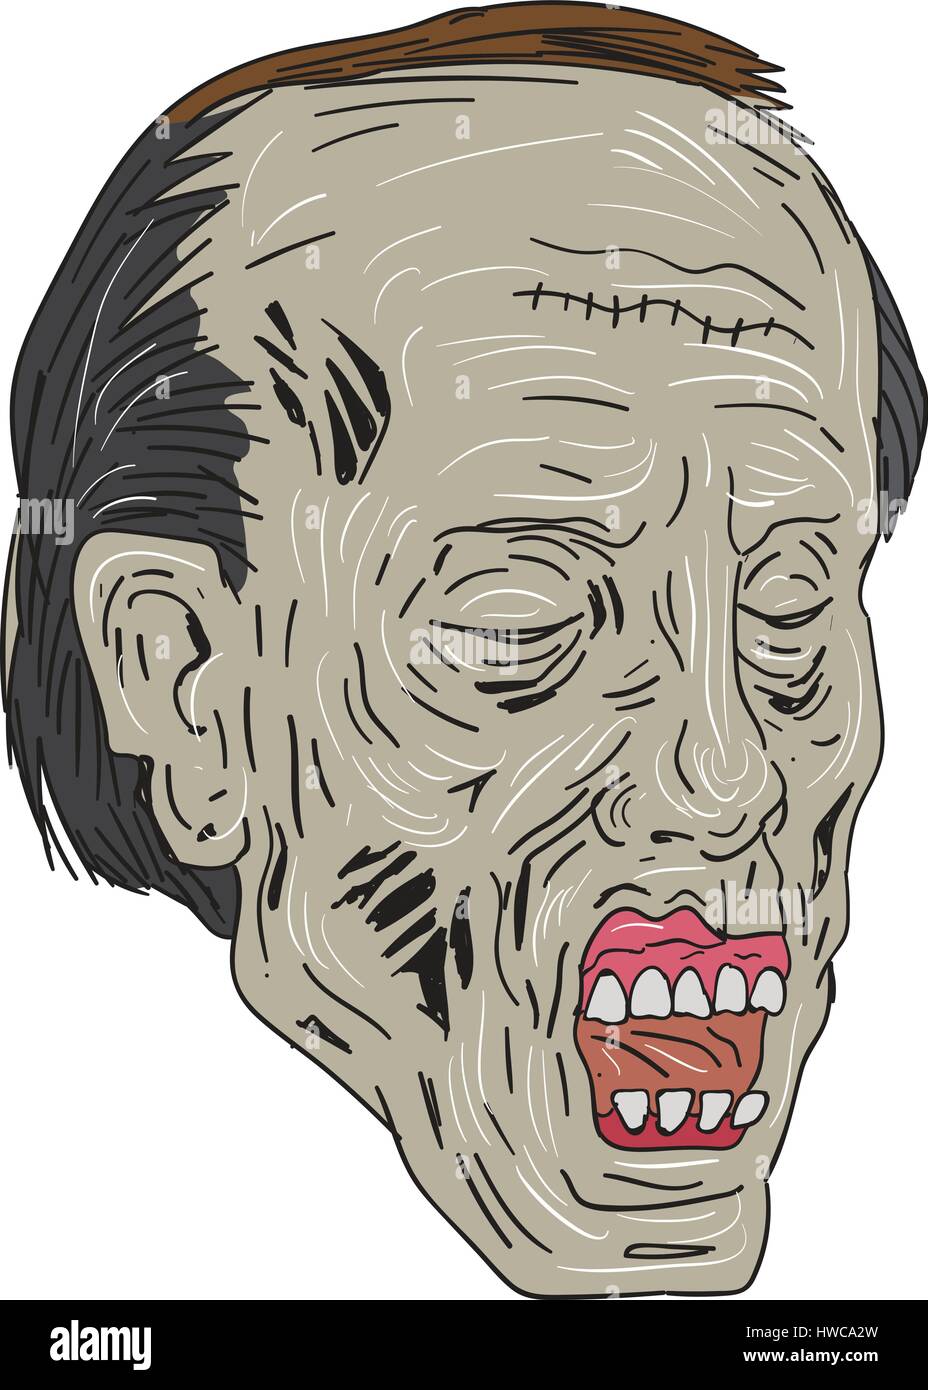 Croquis dessin illustration de style d'un zombie skull head avec les yeux fermés dans un trois-quart de l'ensemble de vues isolées sur fond blanc. Illustration de Vecteur